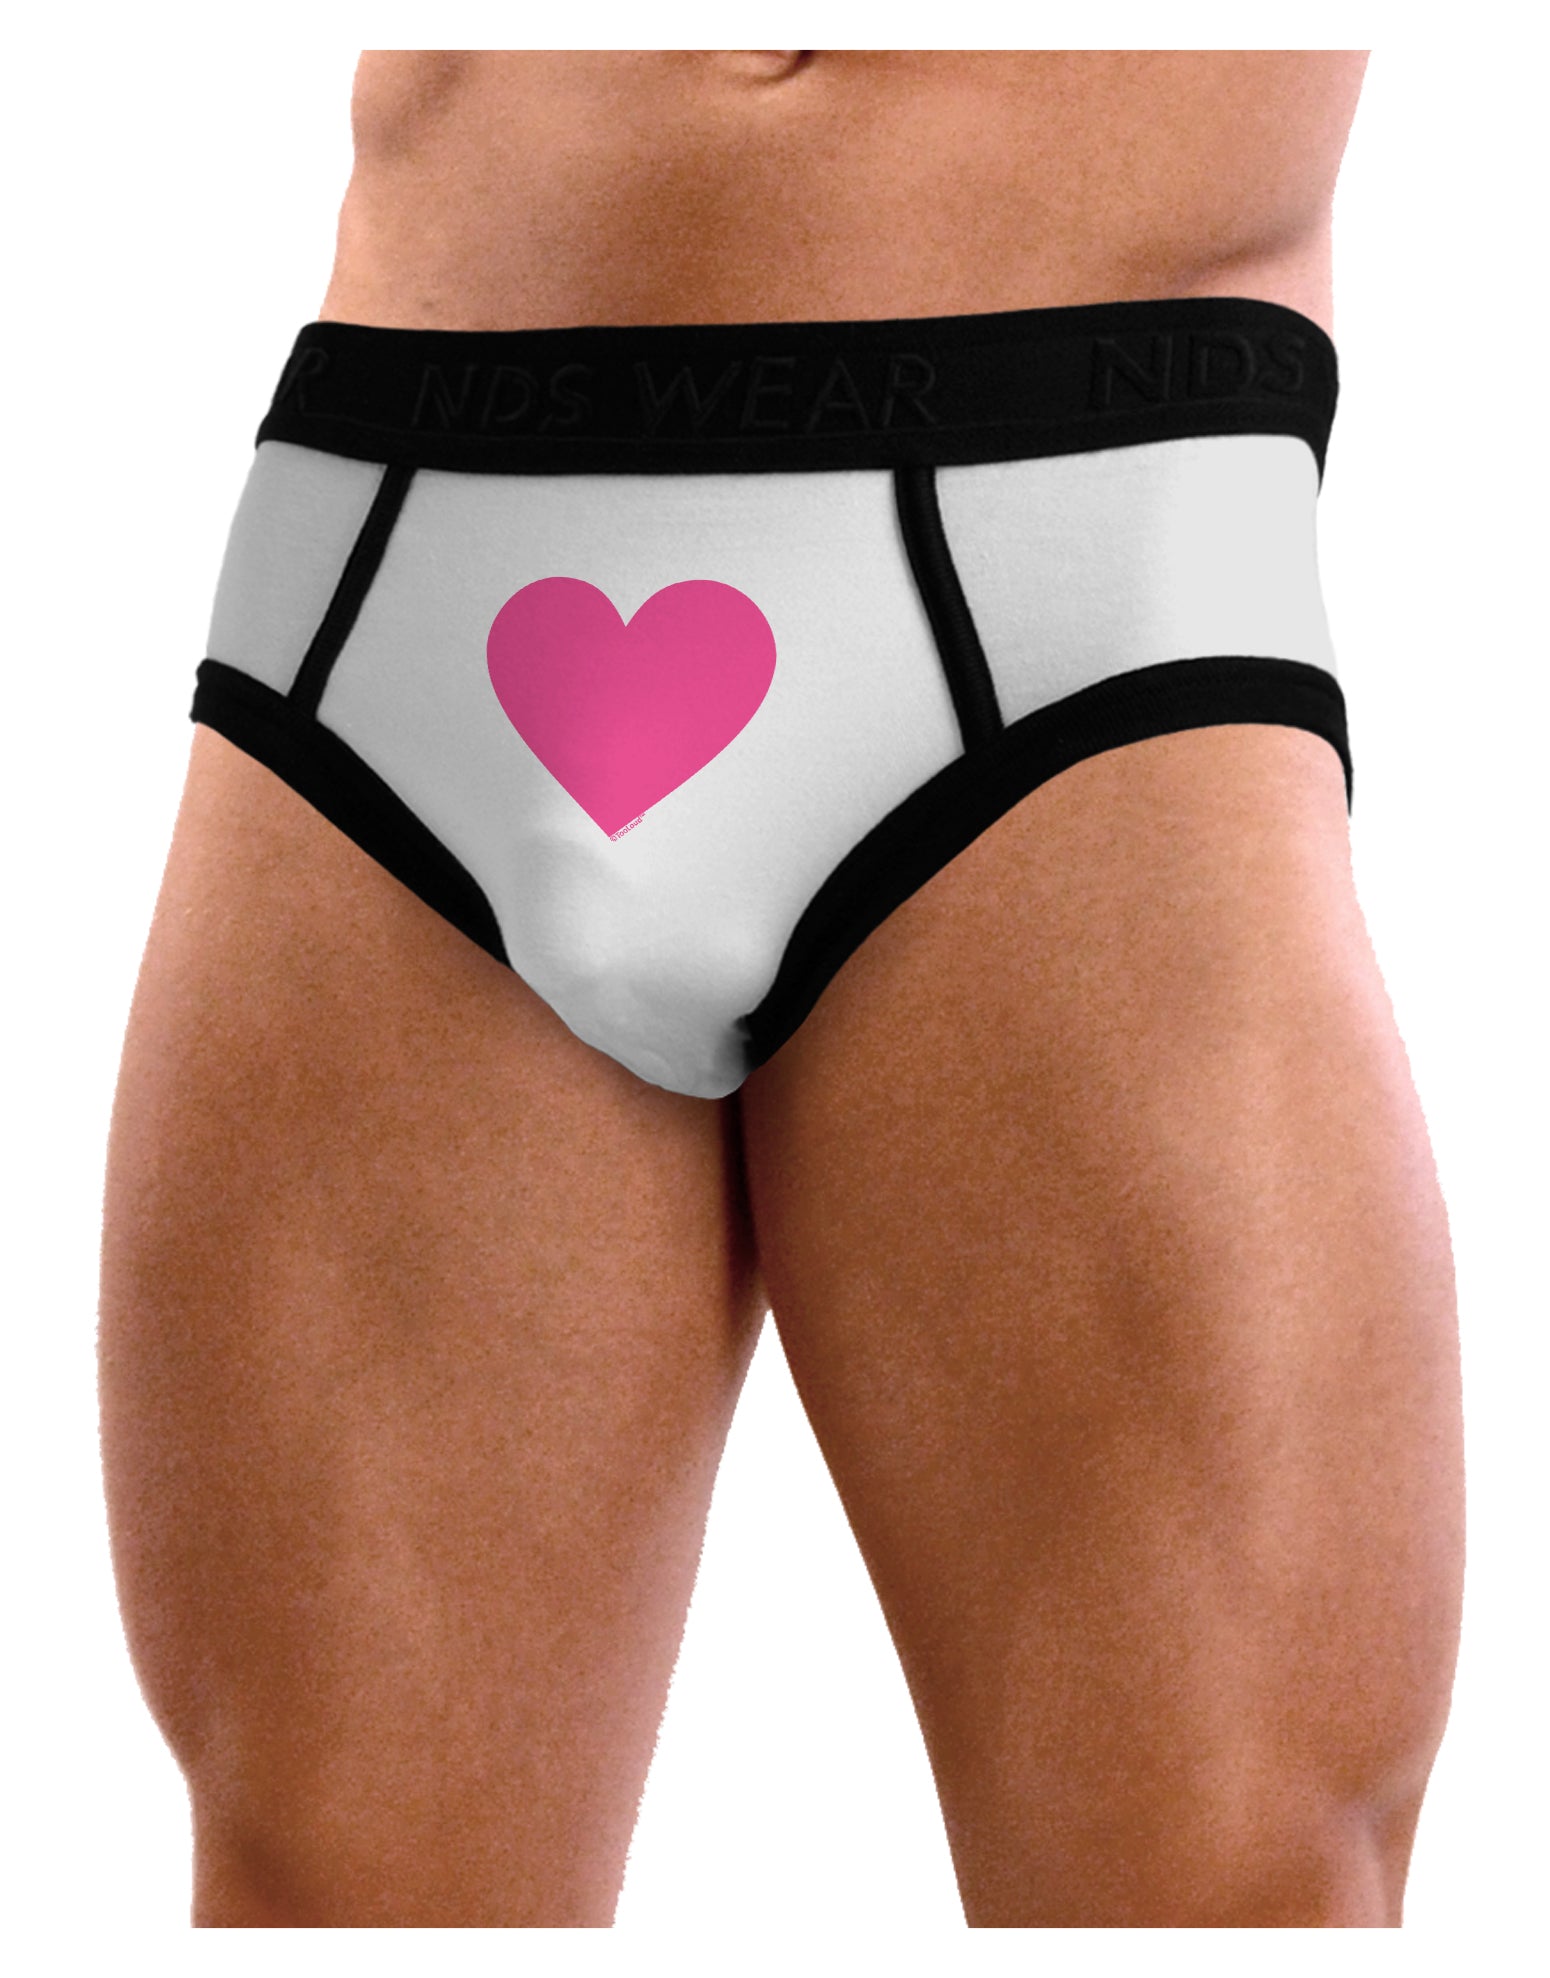 Big Pink Heart Valentine's Day Mens NDS Wear Briefs Underwear